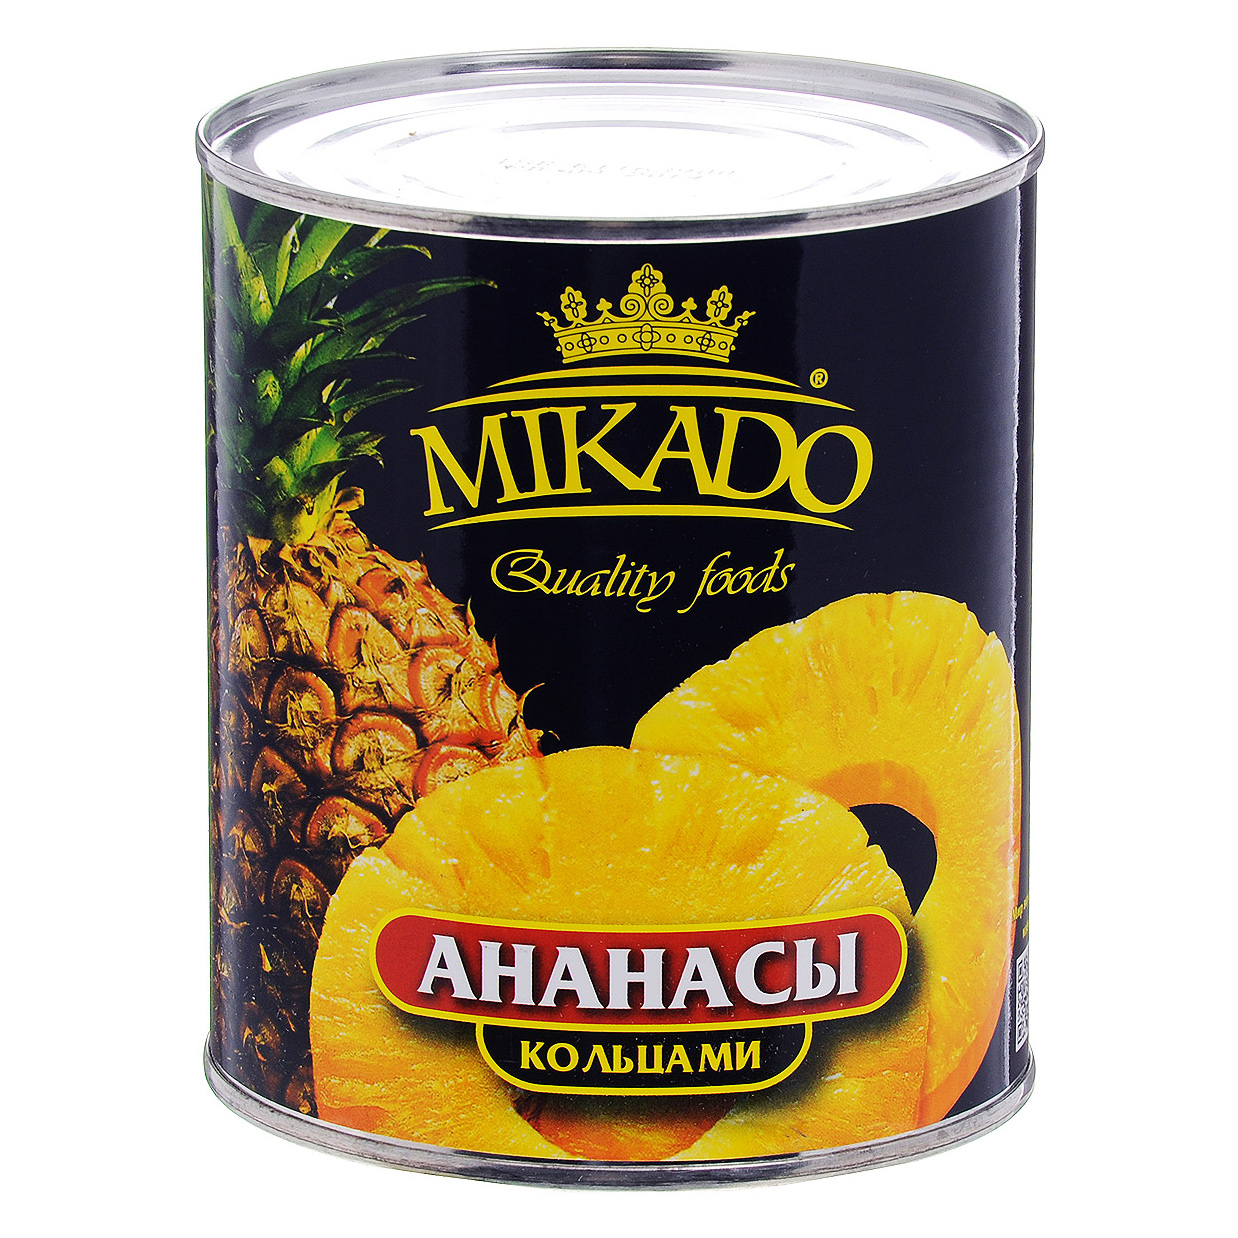 Кольца ананаса Mikado в сиропе 0,825 г кольца ананаса mikado в сиропе 0 825 г